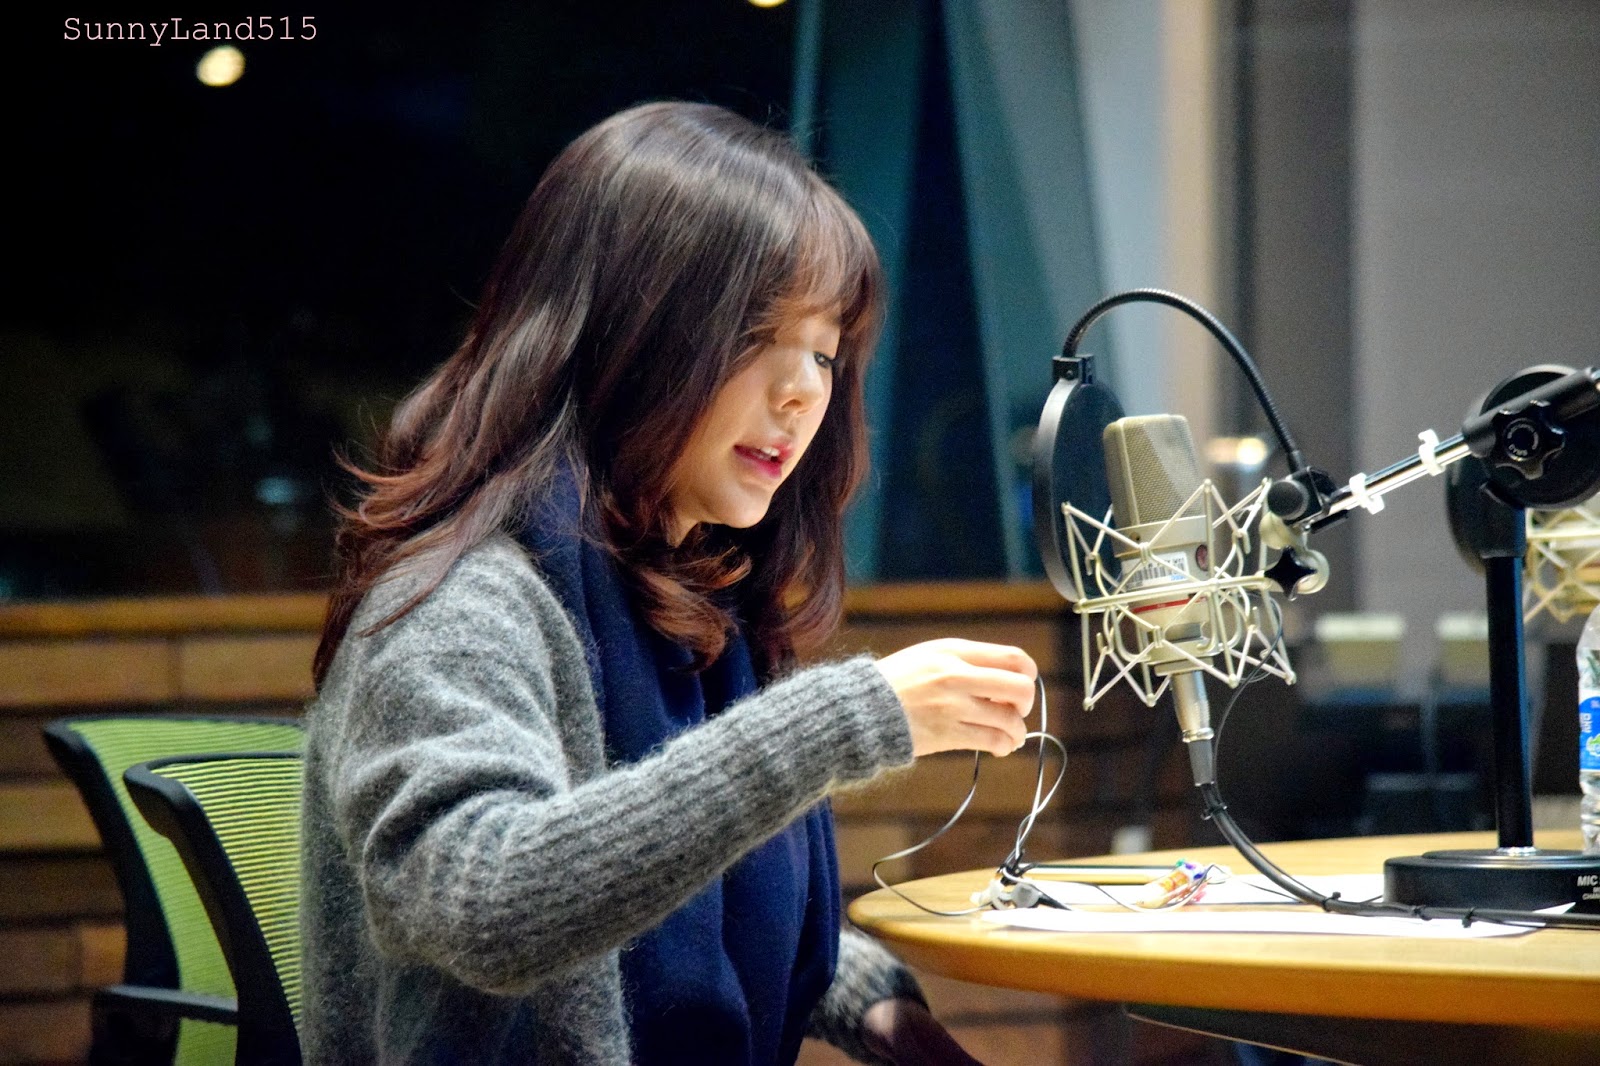 [OTHER][06-02-2015]Hình ảnh mới nhất từ DJ Sunny tại Radio MBC FM4U - "FM Date" - Page 10 DSC_0229_Fotor